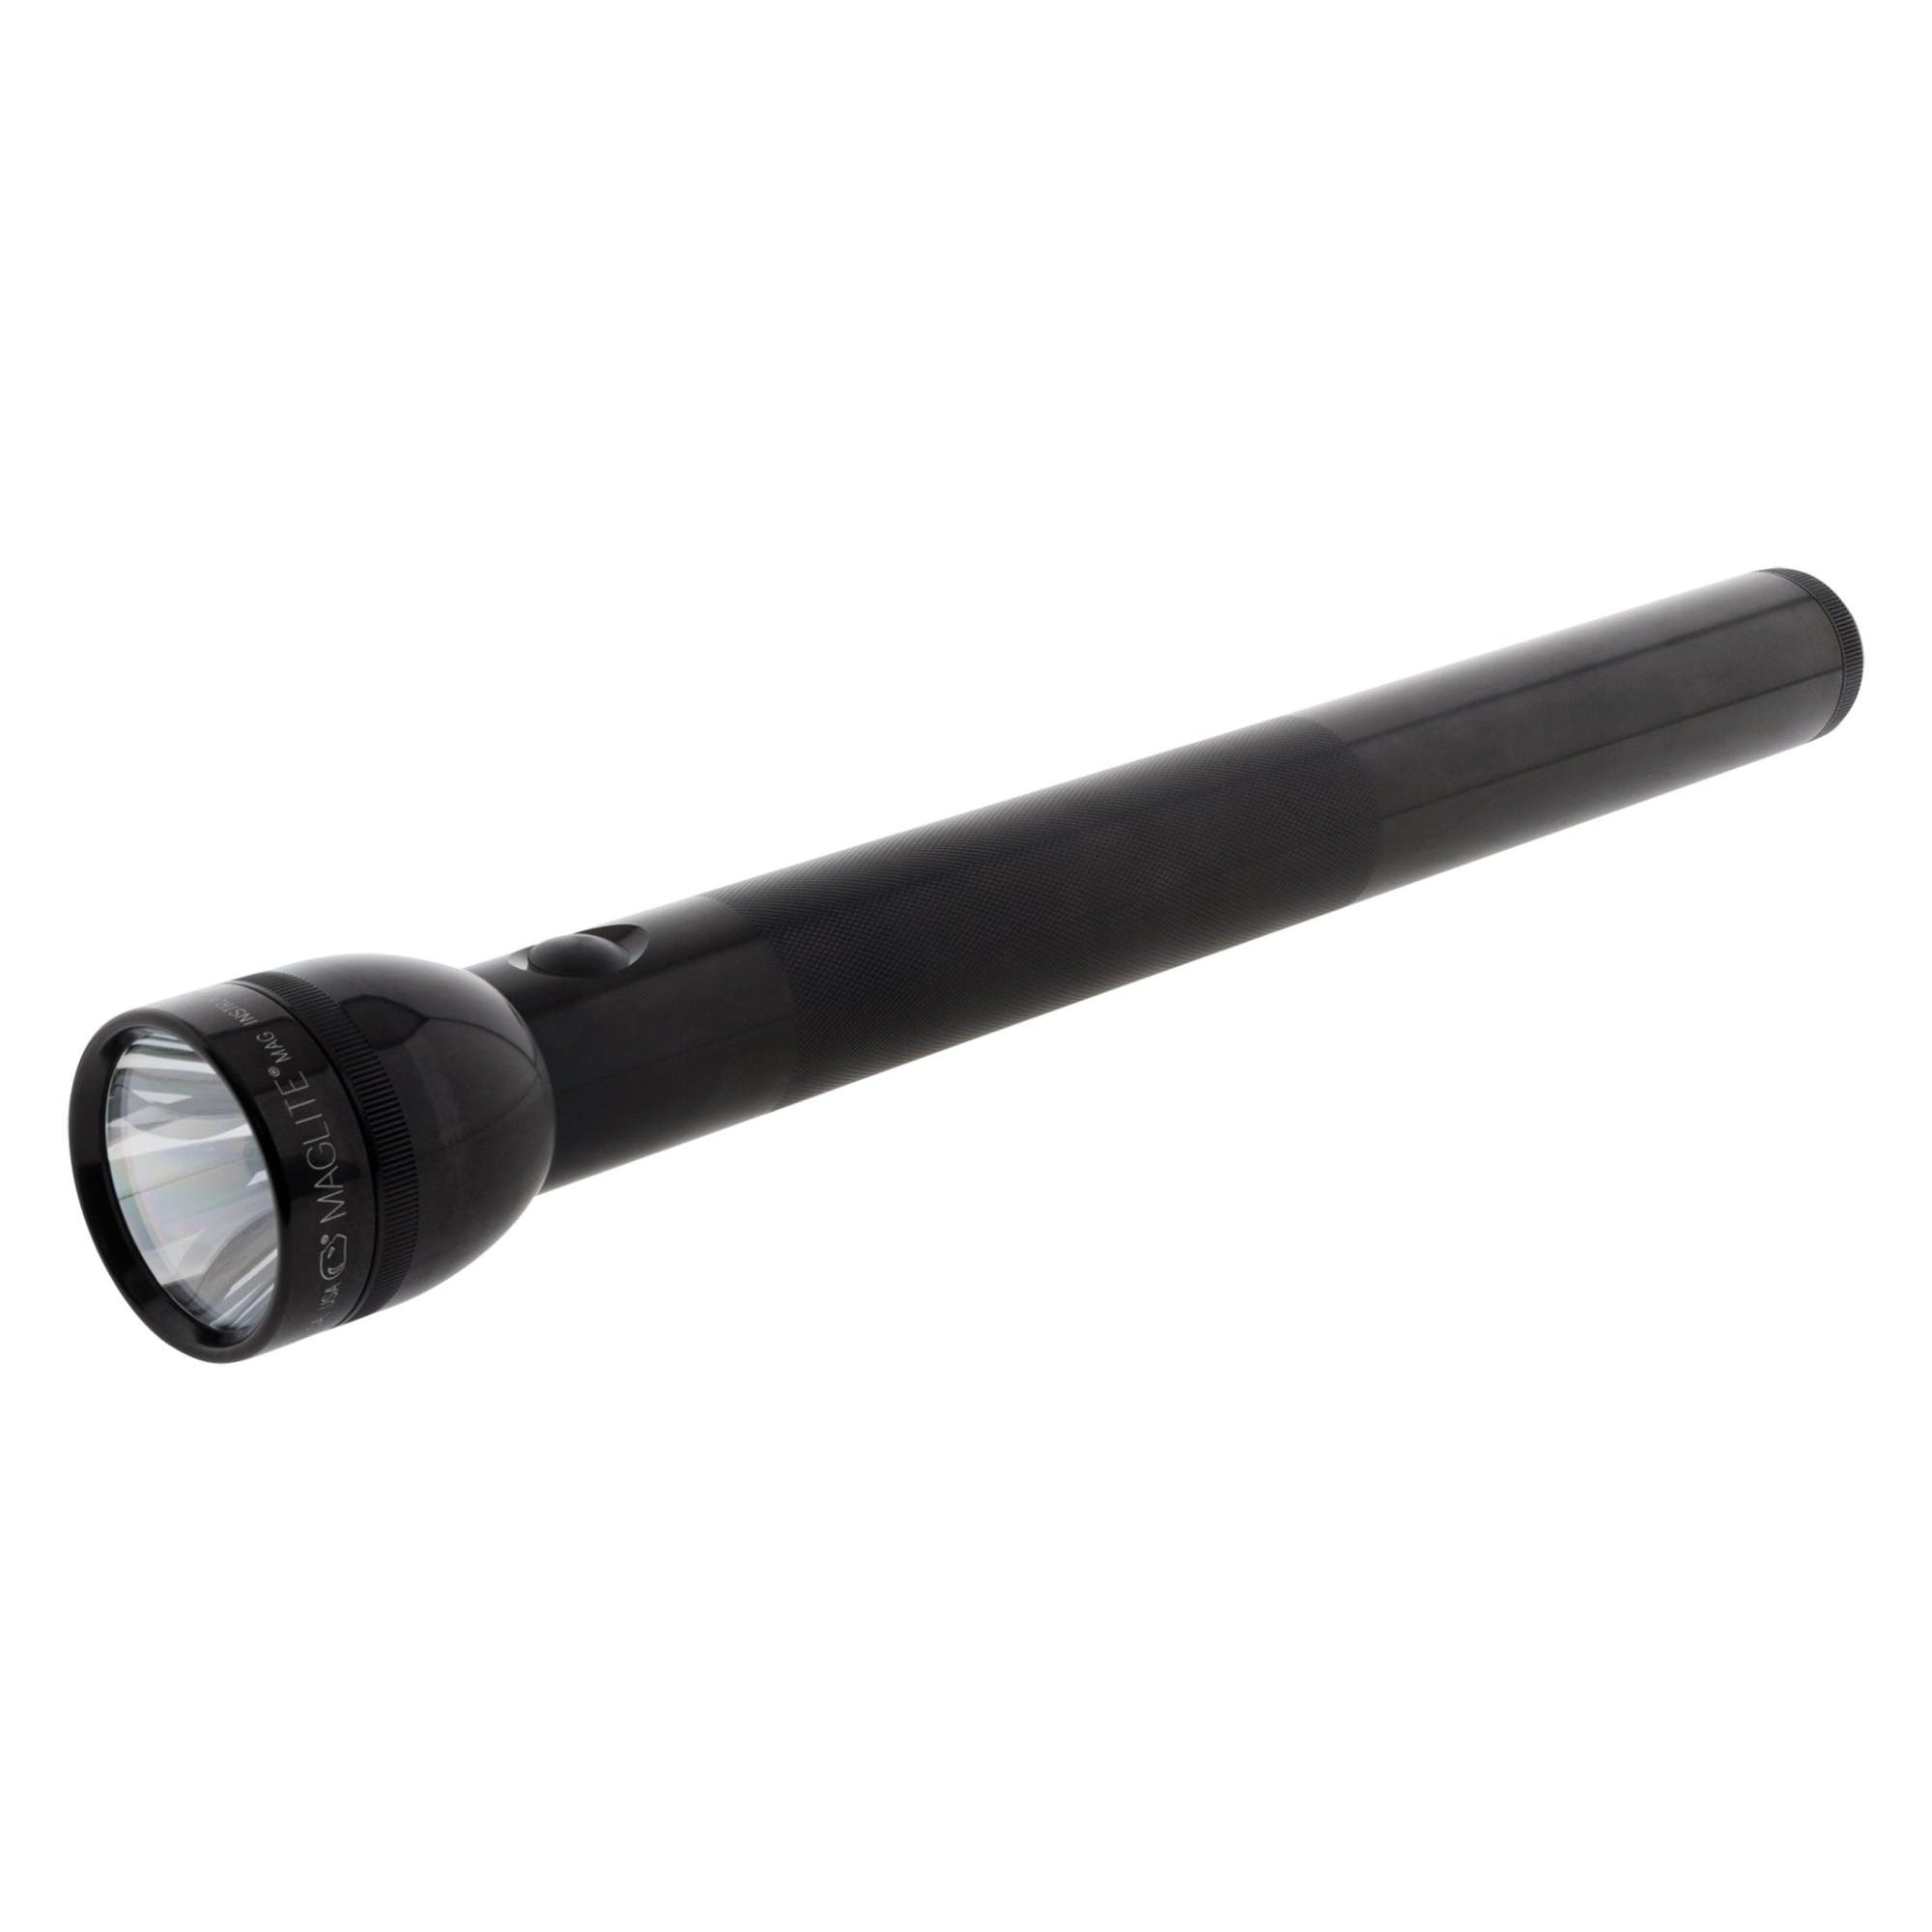 Lampe torche S5D - IPX4 - 5 piles Type D - 151 lumens - 43cm - Noir - Maglite 0